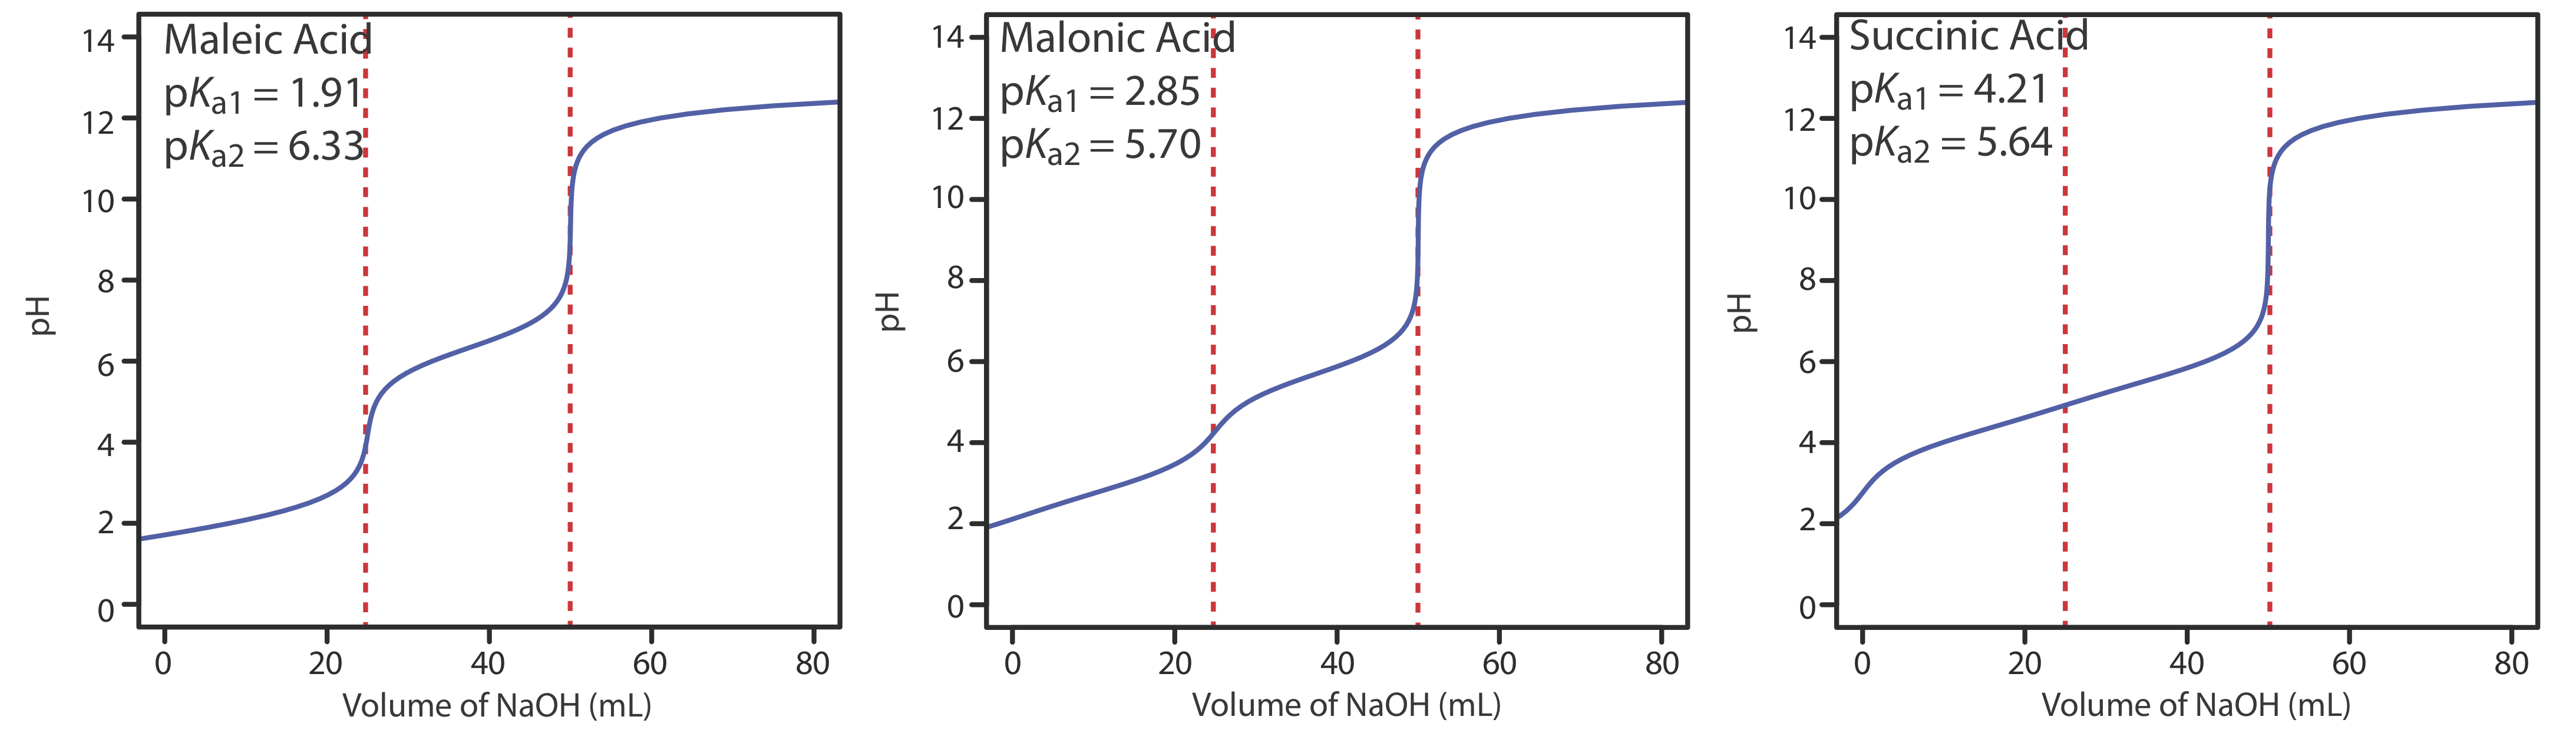 El ácido maleico tiene un pKa1 de 1.91 y un pKa2 de 6.33. El ácido malónico tiene un pKa1 de 2.85 y un pKa2 de 5.70. El ácido succínico tiene un pKa1 de y un pKa2 de 5.64.4.21